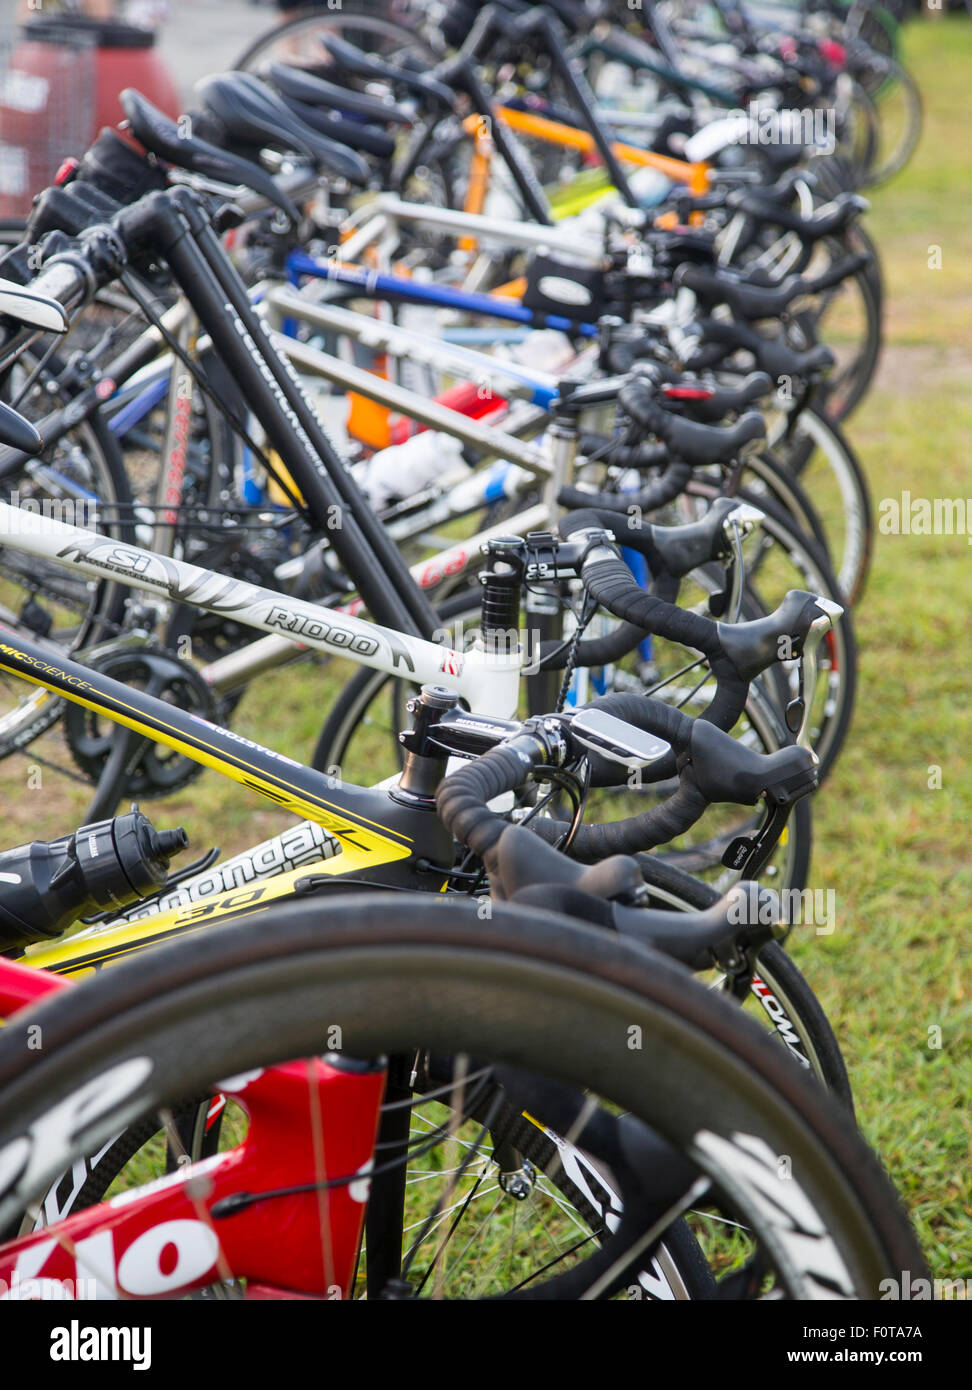 Fahrräder auf einem Rost an einem Radsport-event Stockfoto